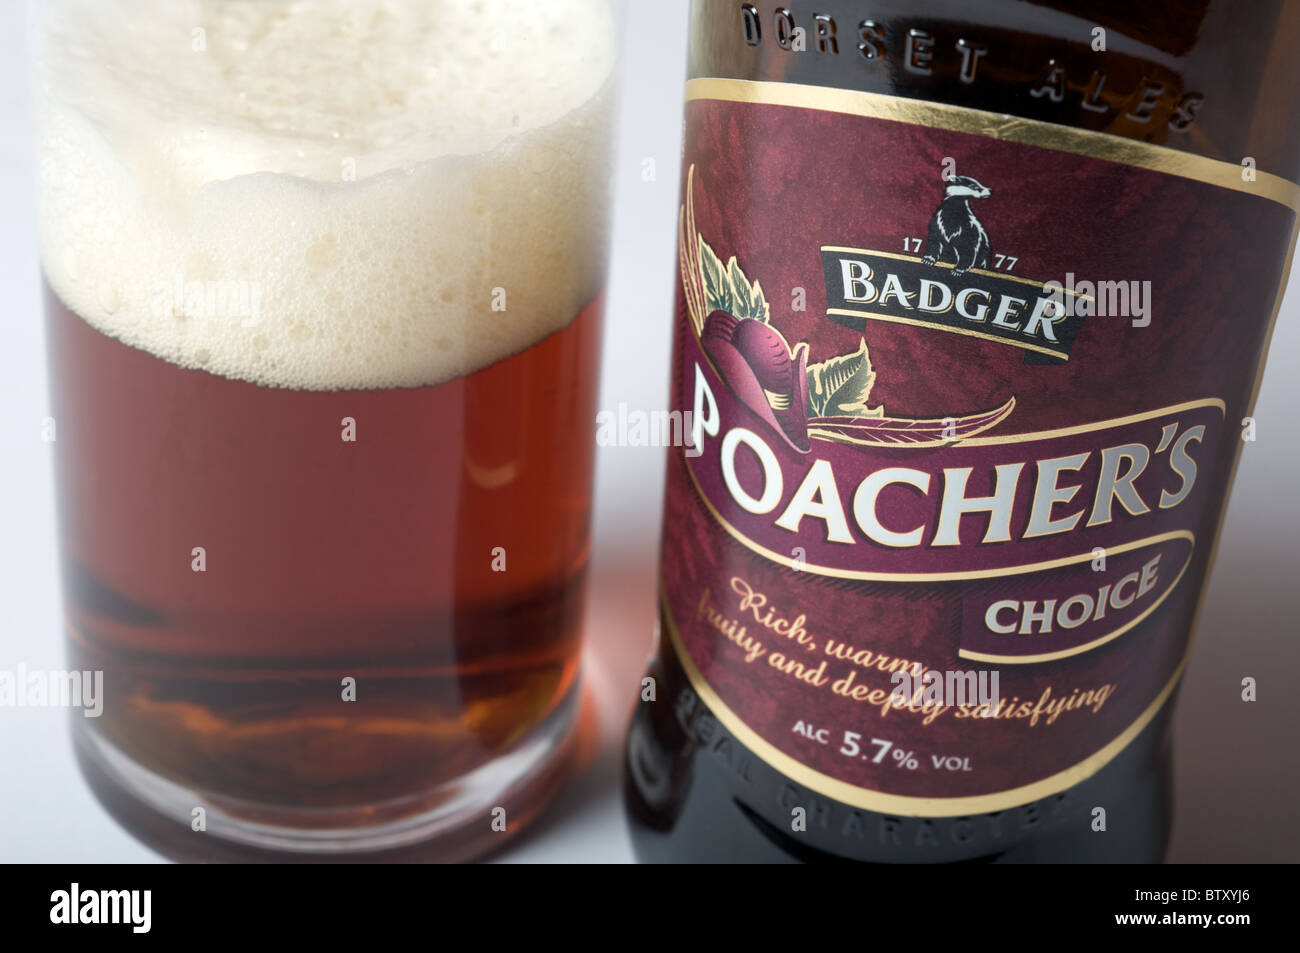 Badger poacher's choice Dorset ale Stock Photo